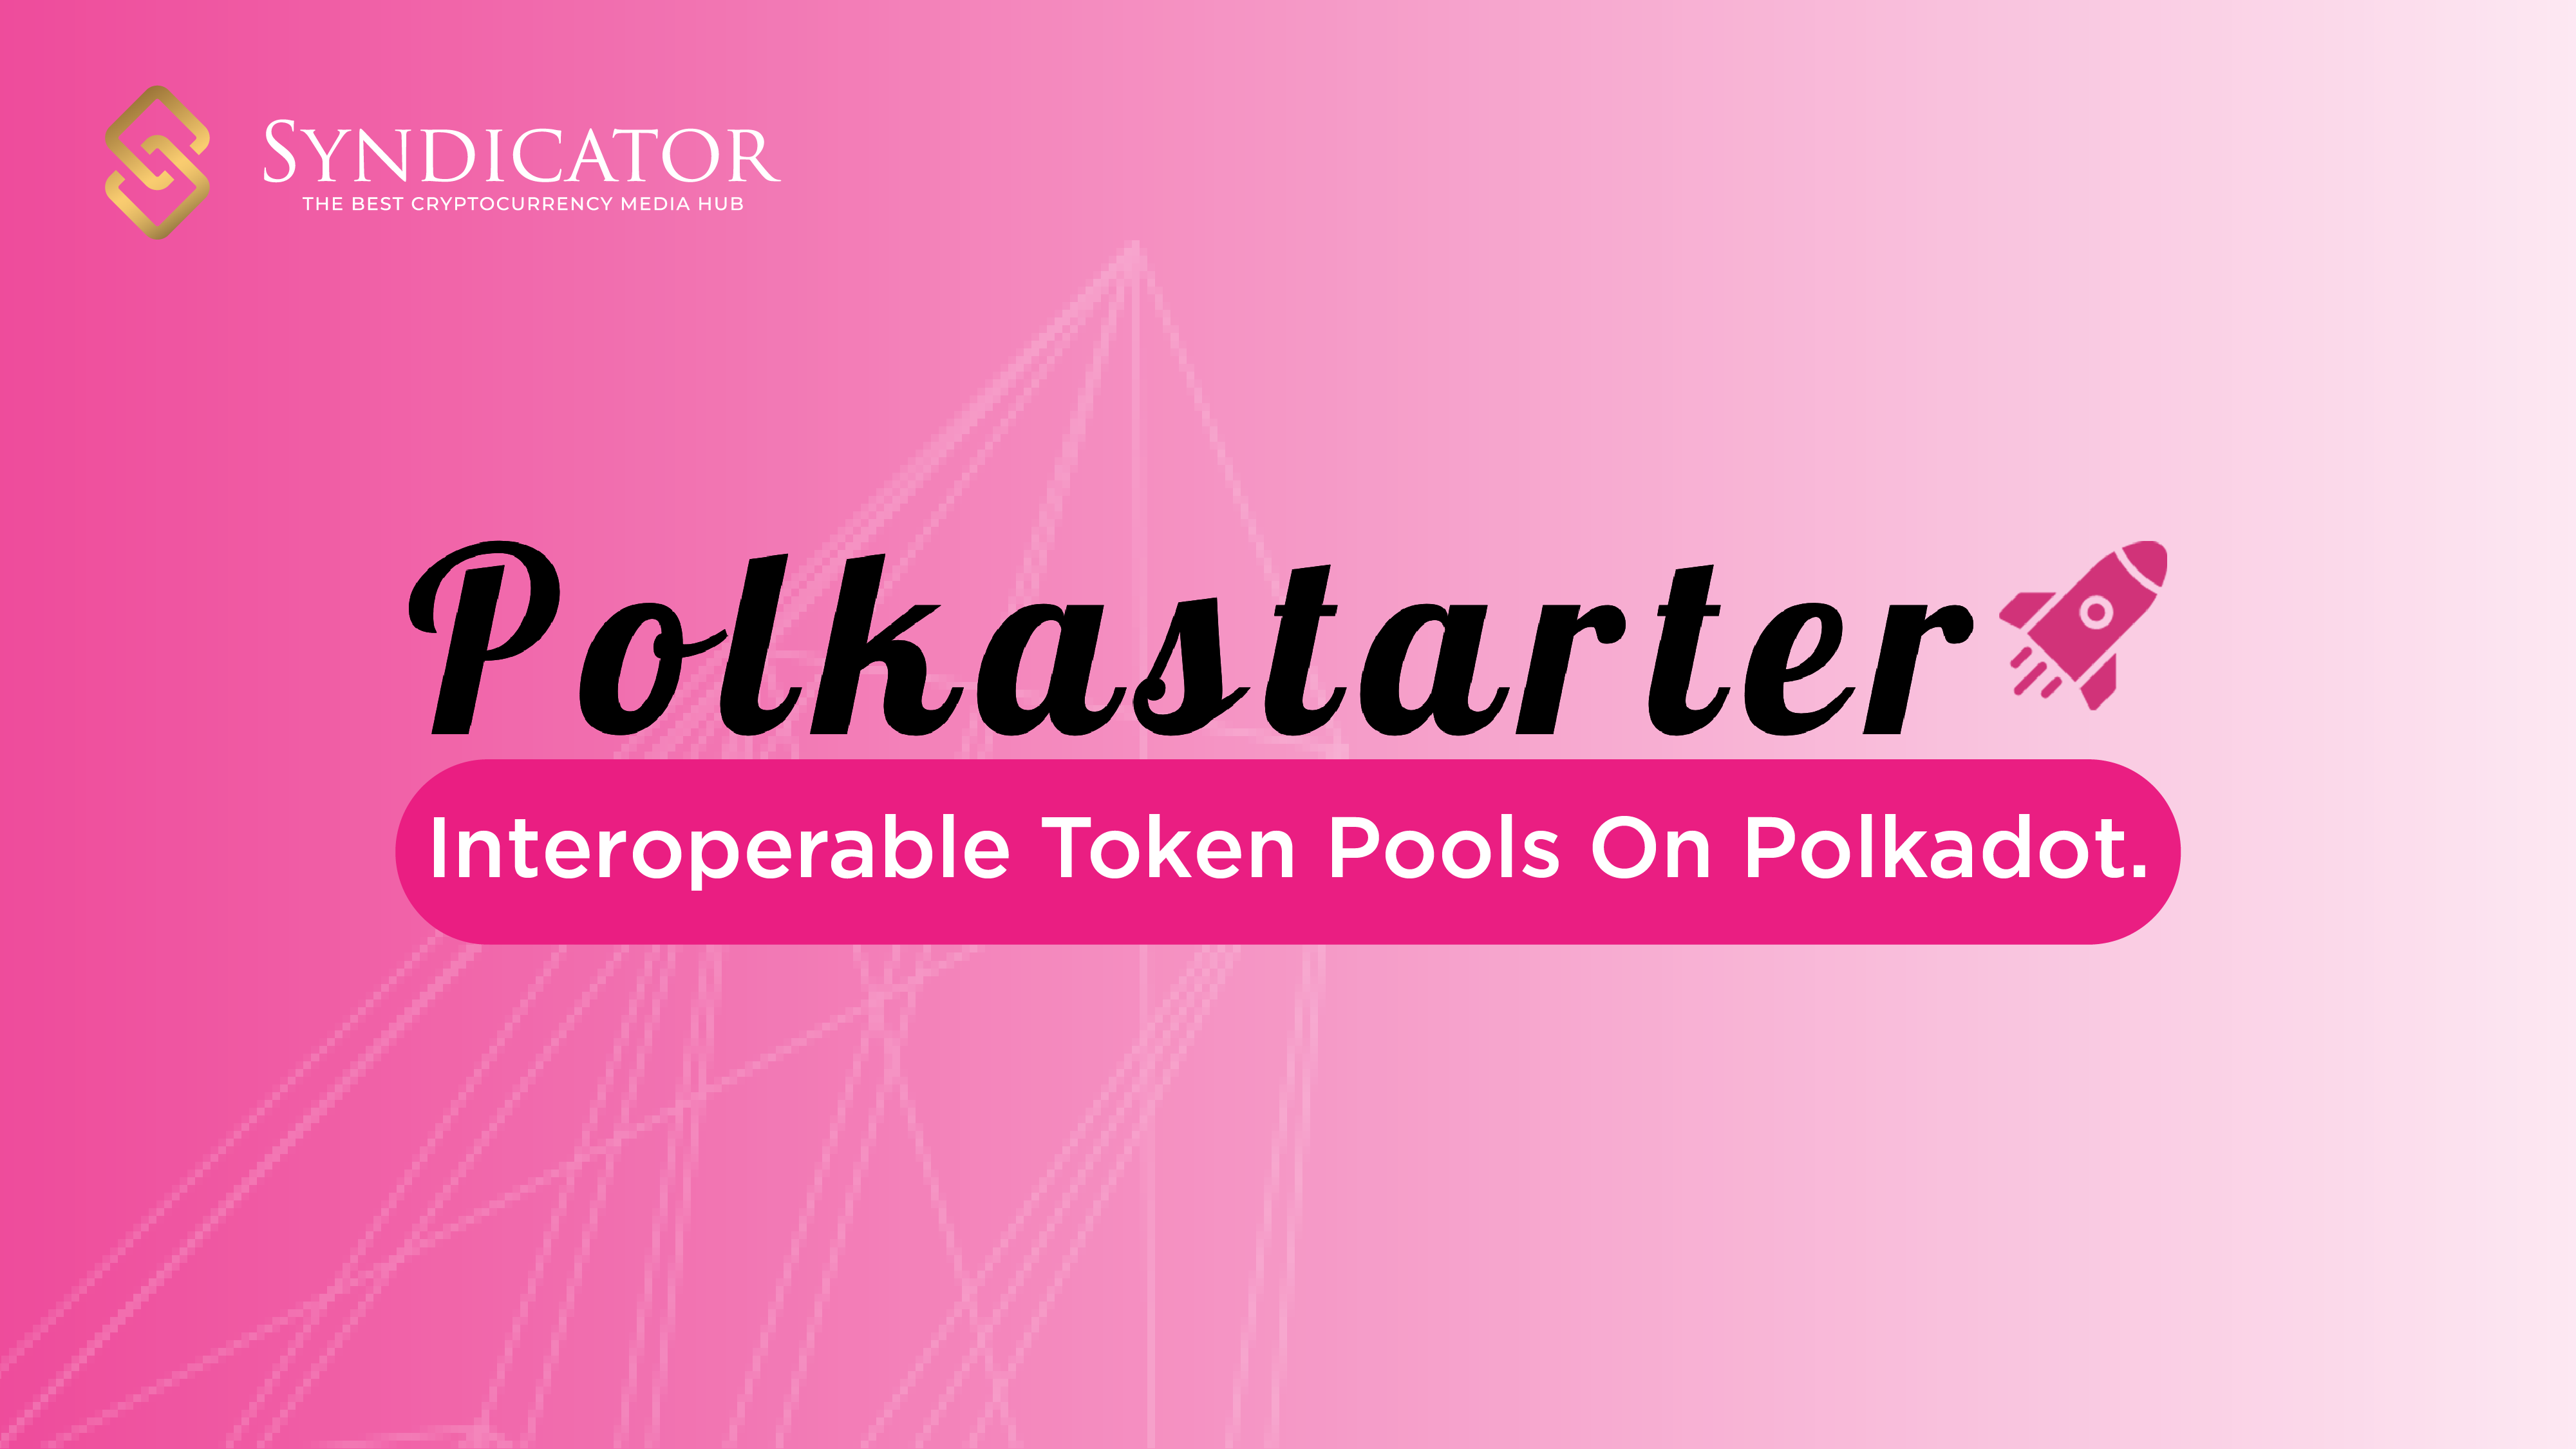 Polkastarter - Nền tảng giao dịch phi tập trung cho các pool token chuỗi chéo | Syndicator